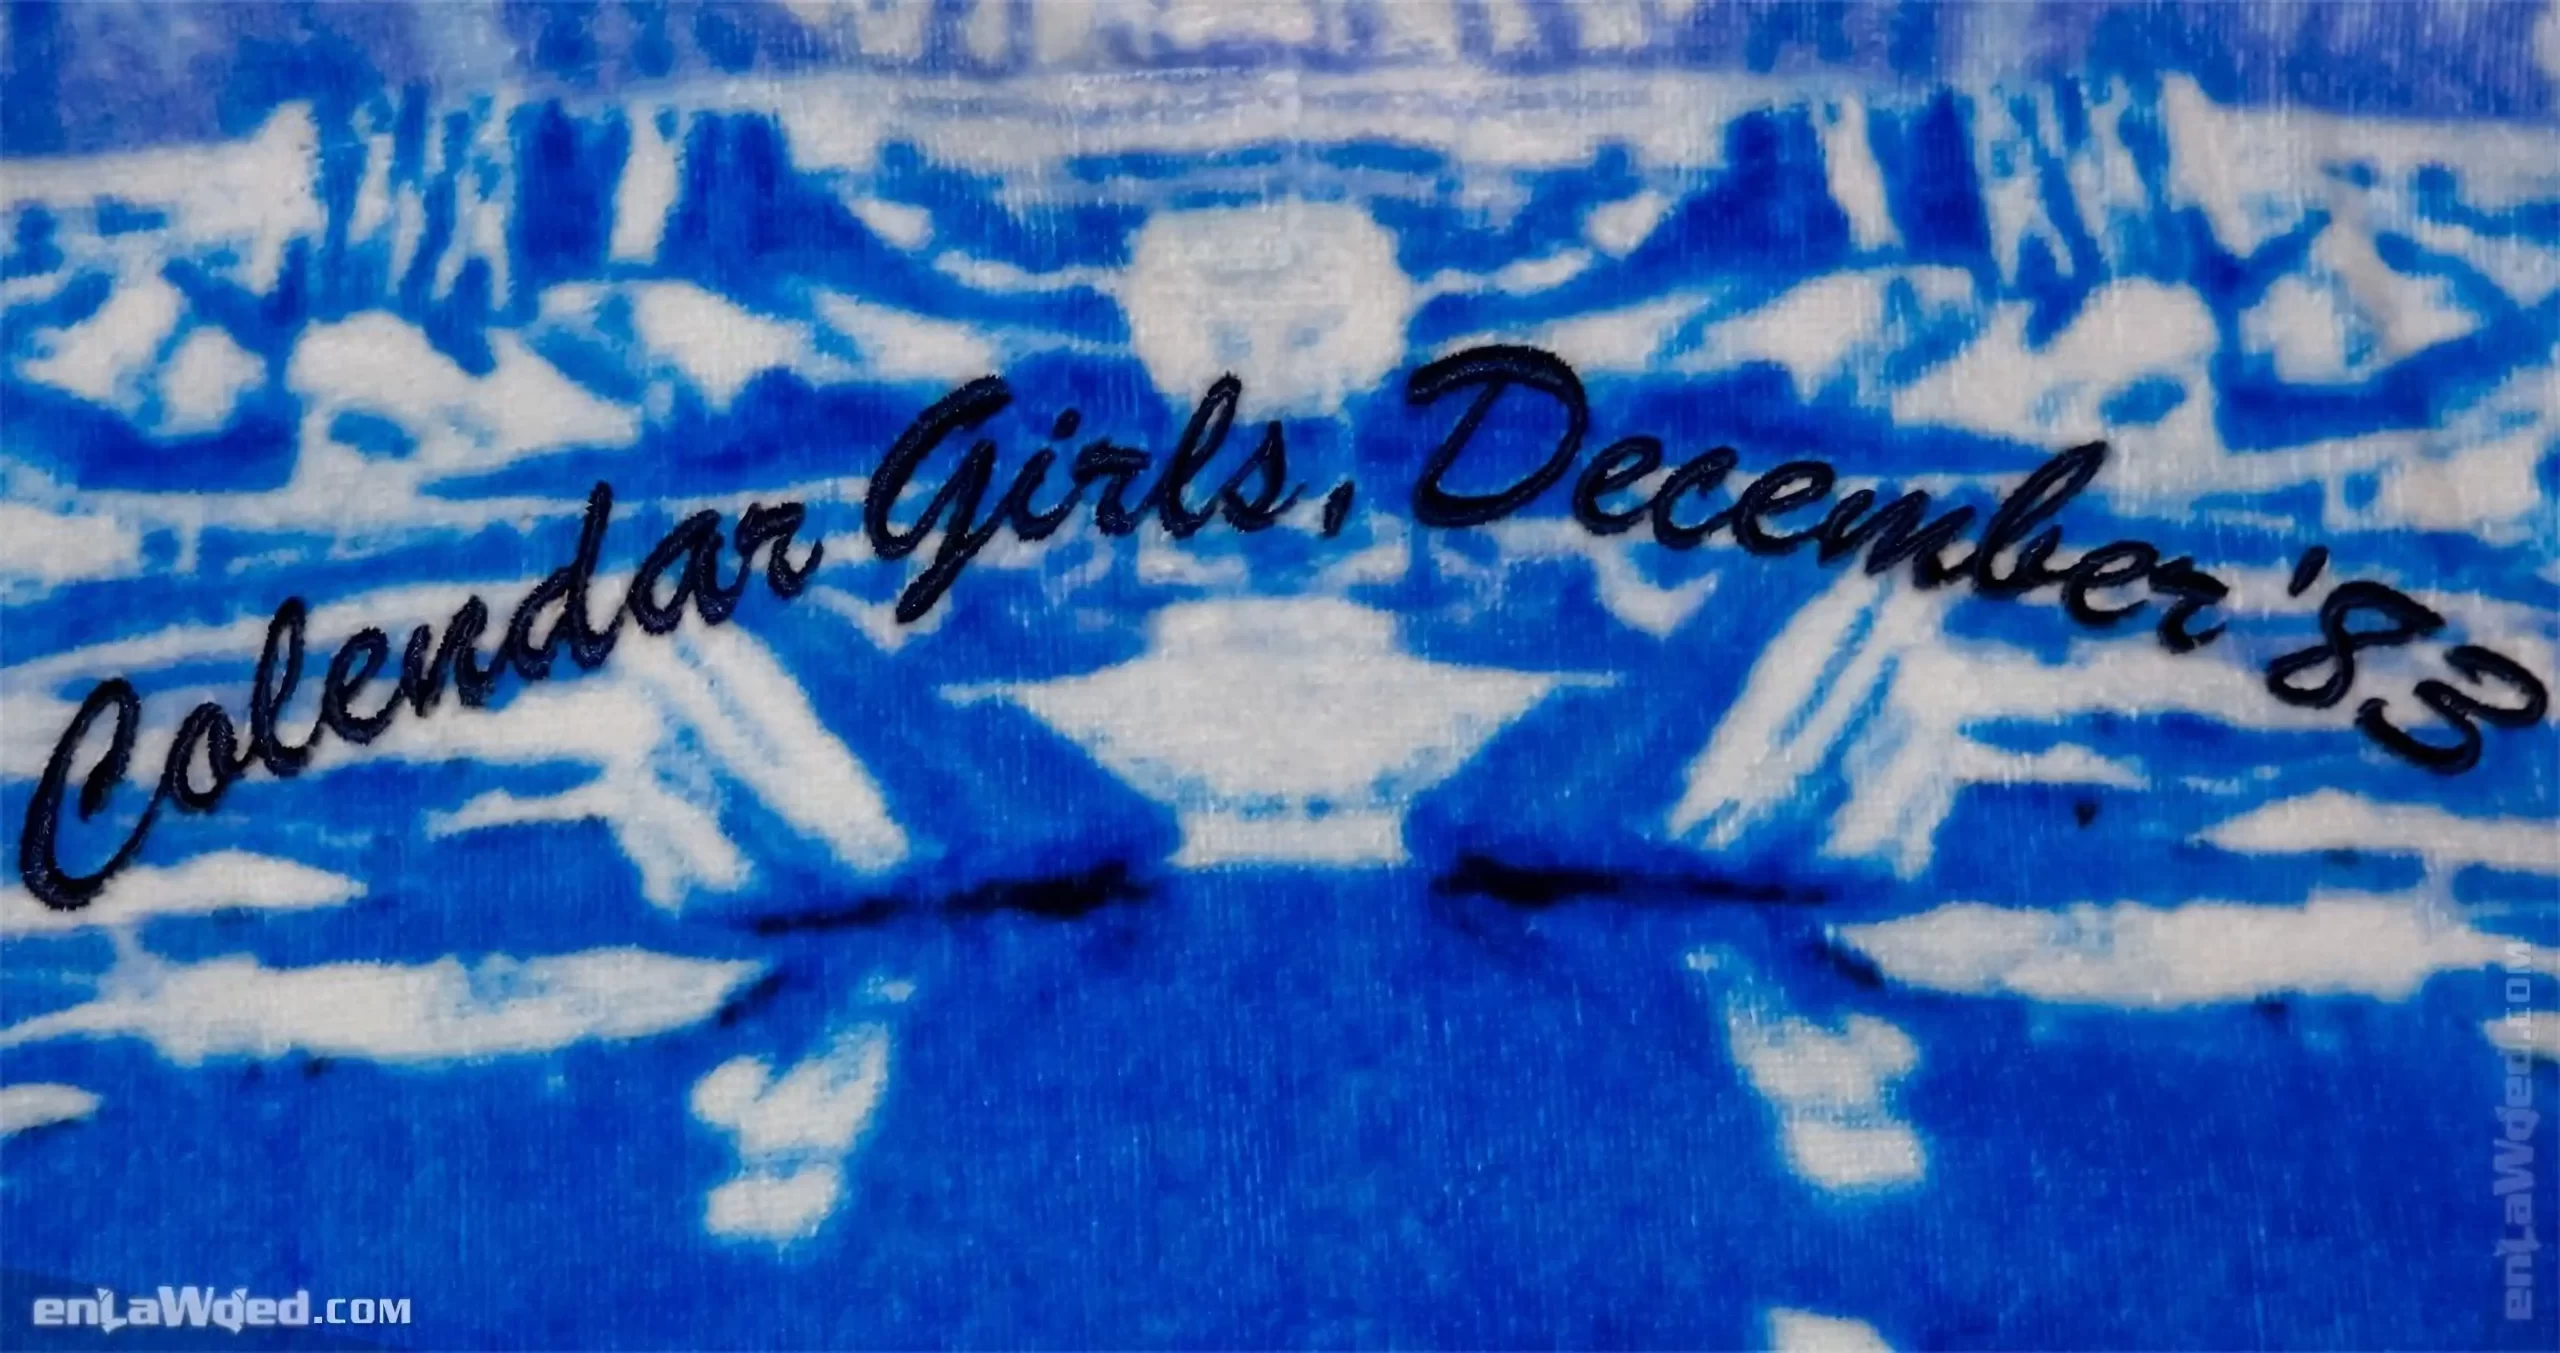 Men’s 2005 Calendar Girls December ’83 TT by Adidas: Mesmerizing (EnLawded.com file #lmchk89760ip2y121530kg9st)